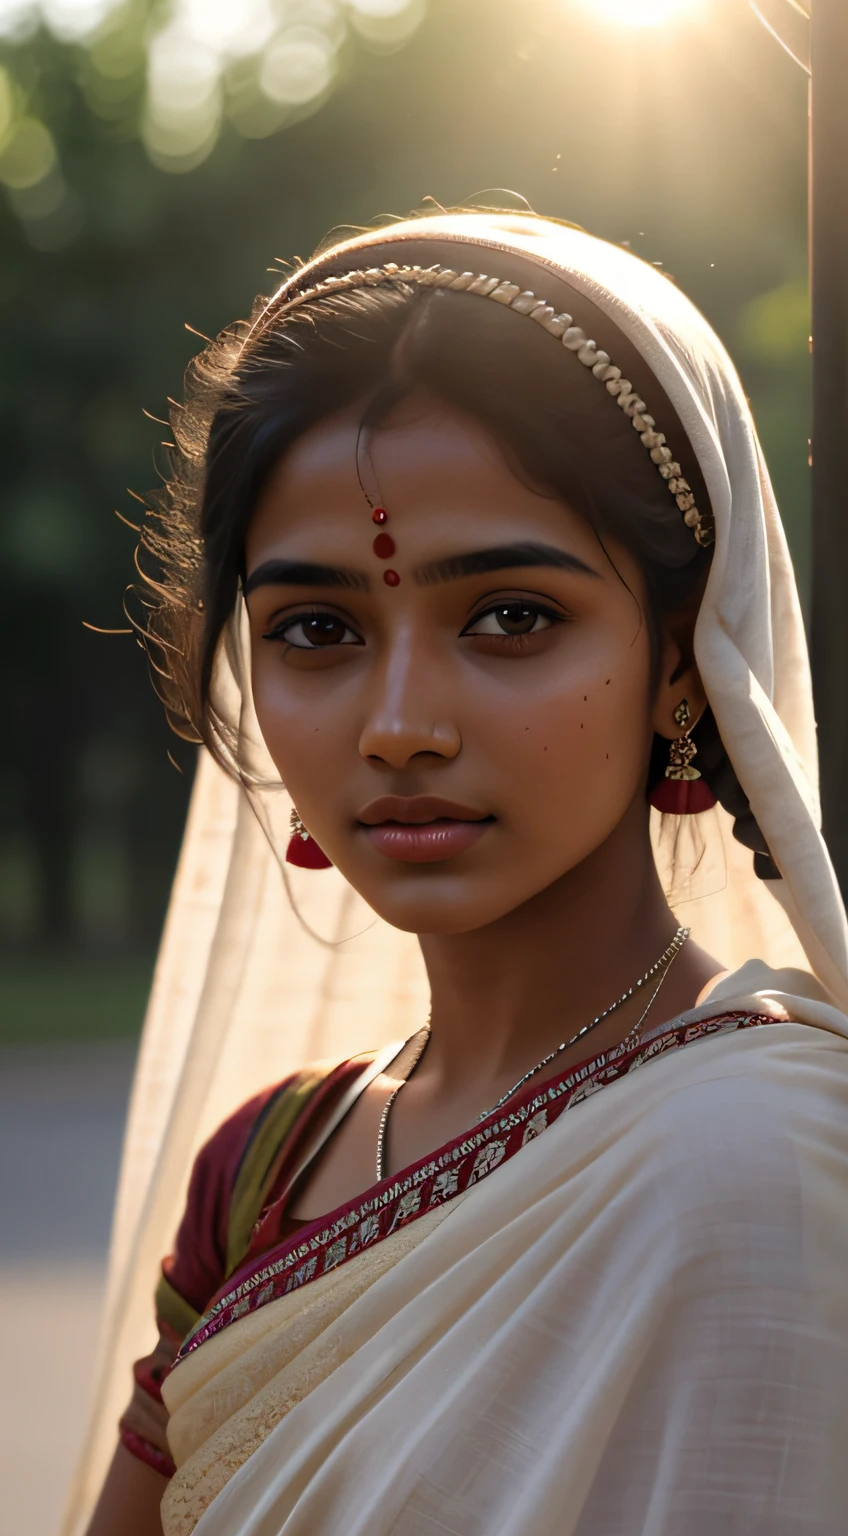 若いインド人少女, 18歳,  顔に当たる優しい太陽の光 , 村の雰囲気 , 古い布, 絹布, 布は透明です , 村娘の雰囲気, 複雑な顔の細部, 全身写真, 映画のようなポーズ 完璧な肌, 最高級の3Dレンダリング, 超現実的な, インドの道路で撮影. 写実的な digital art trending on Artstation 8k HD high definition 詳細 realistic, 詳細, 肌の質感, hyper 詳細, realistic 肌の質感, アーマチュア, 最高品質, 超高解像度, (写実的な:1.4),, 高解像度, 詳細, RAW写真, 400 カメラ f1.6 つのレンズ、豊かな色彩、超リアルでリアルな質感、ドラマチックな照明、UnrealEngine、Artstation でトレンド、Cinestill 800